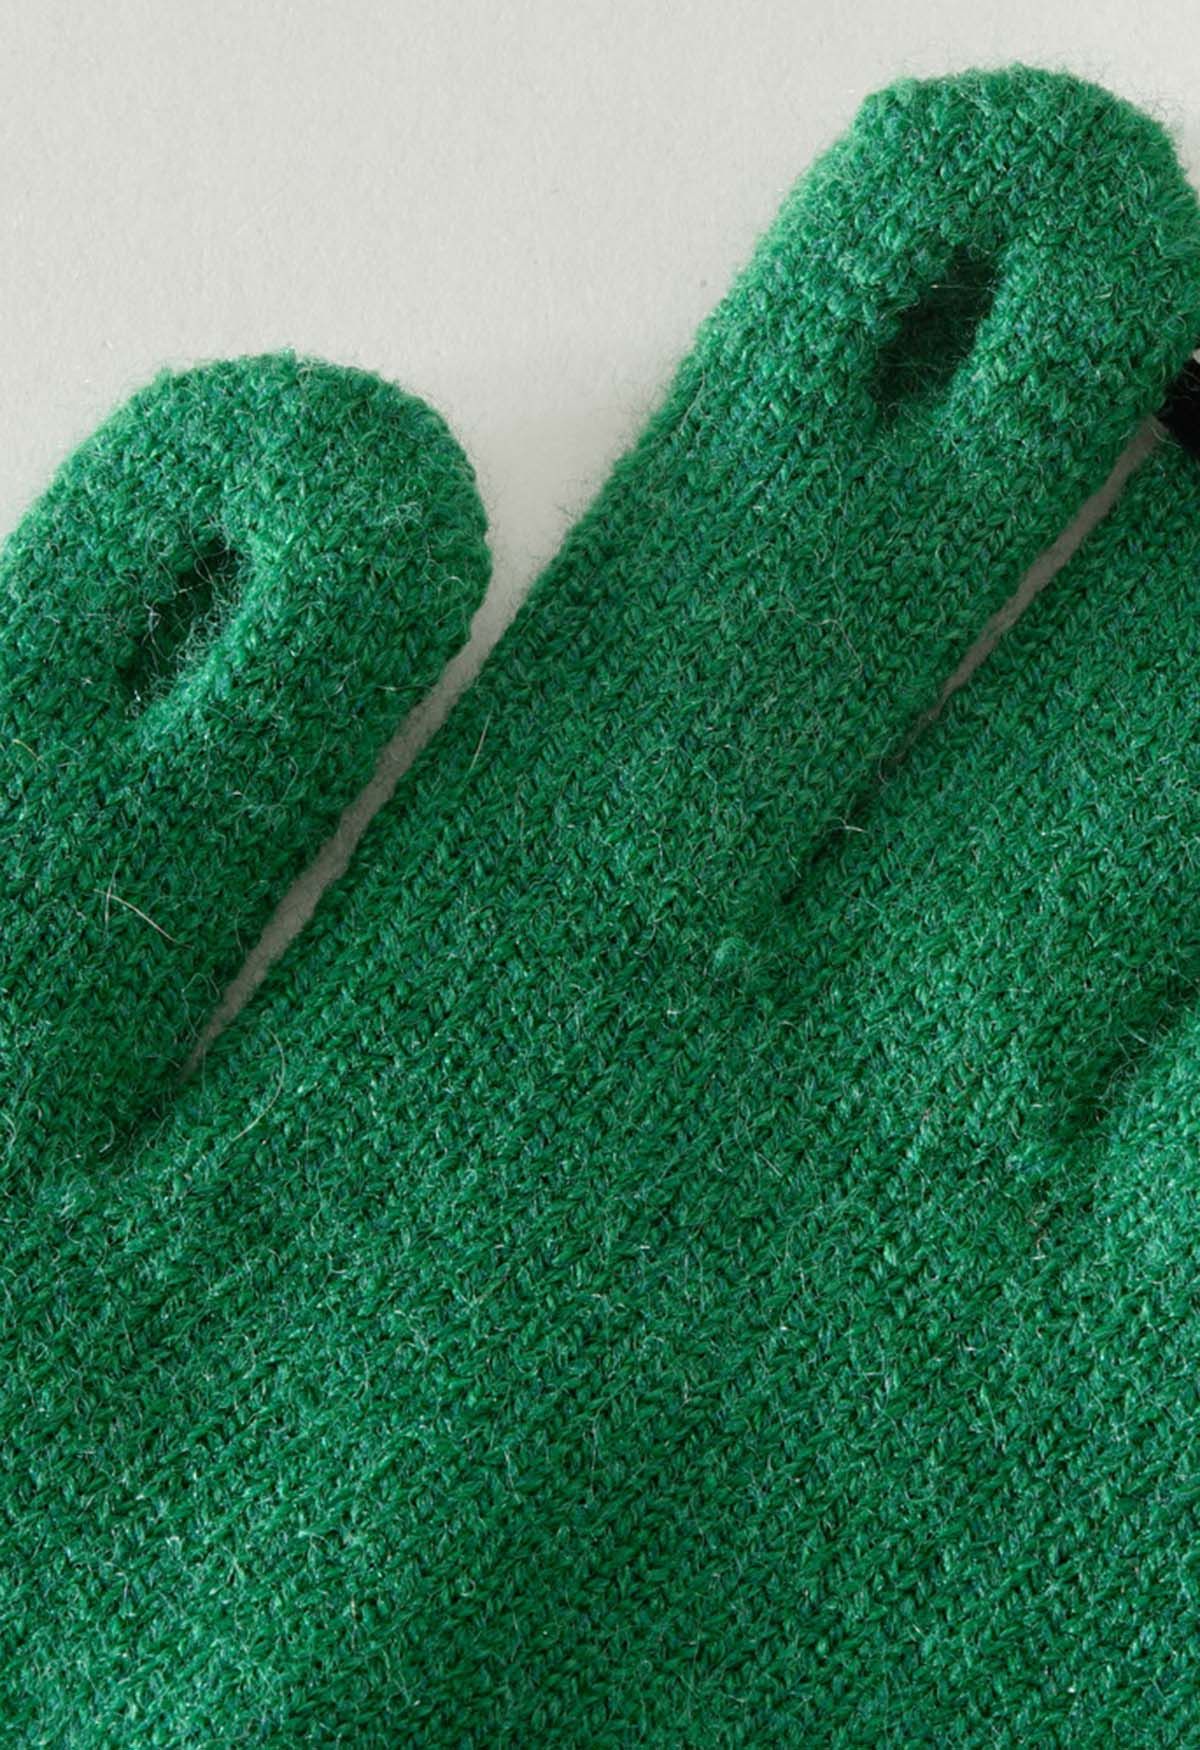 Bowknot Decor Fingerhole Knit Gloves in Green